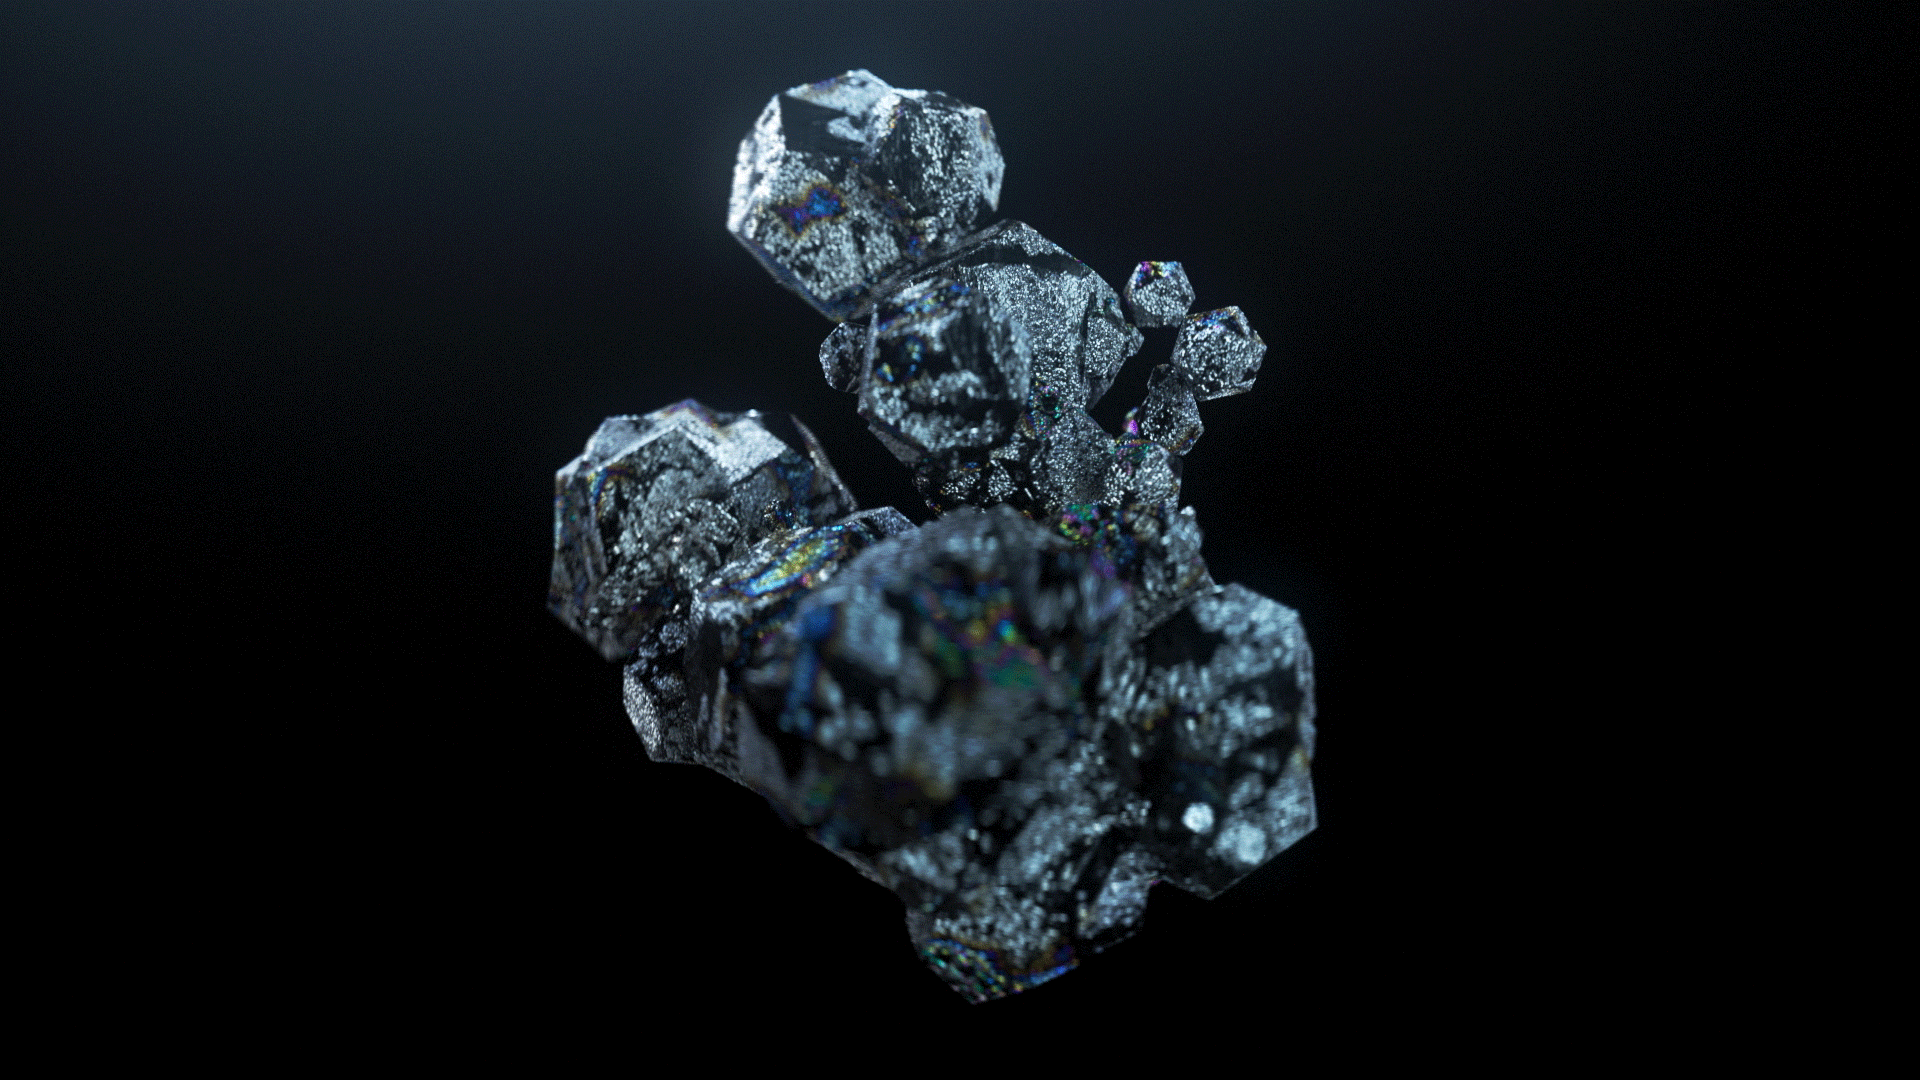 Des cristaux illustrés de manière abstraite qui se déplacent.